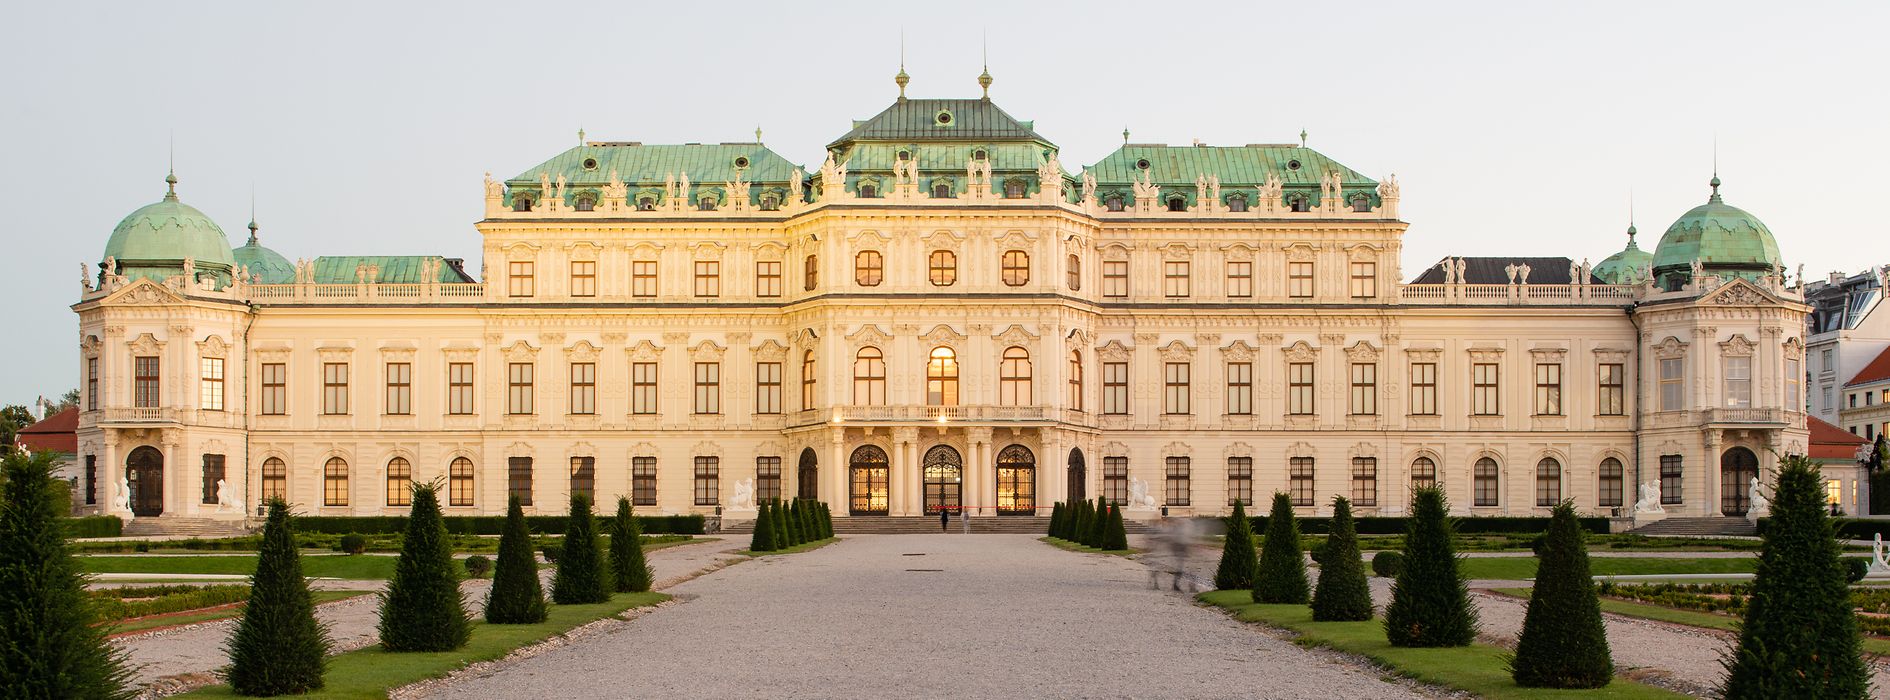 ベルヴェデーレ宮殿、ウィーン